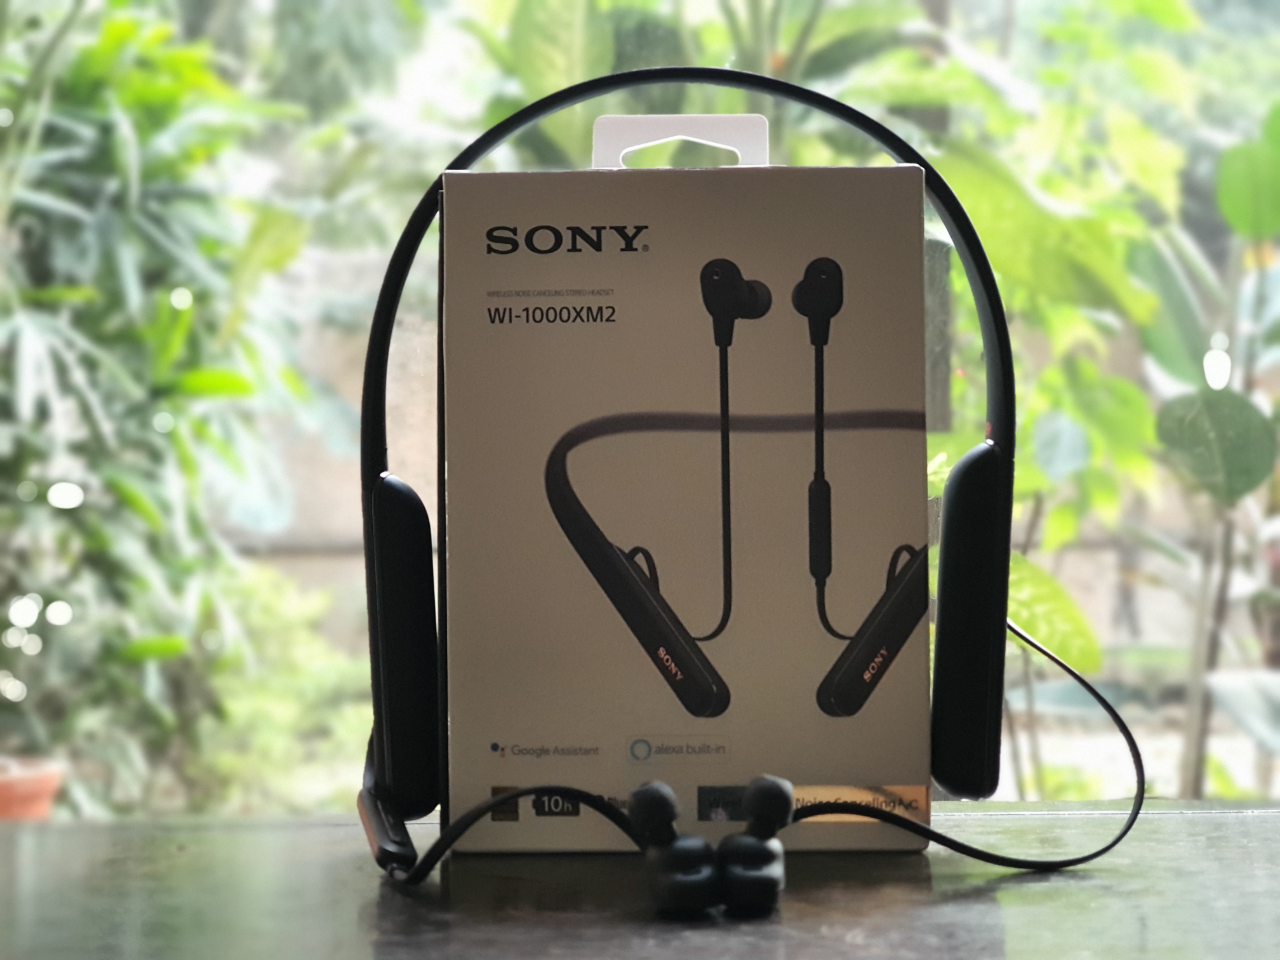 In a world of truly wireless earphones, will Sony's WI